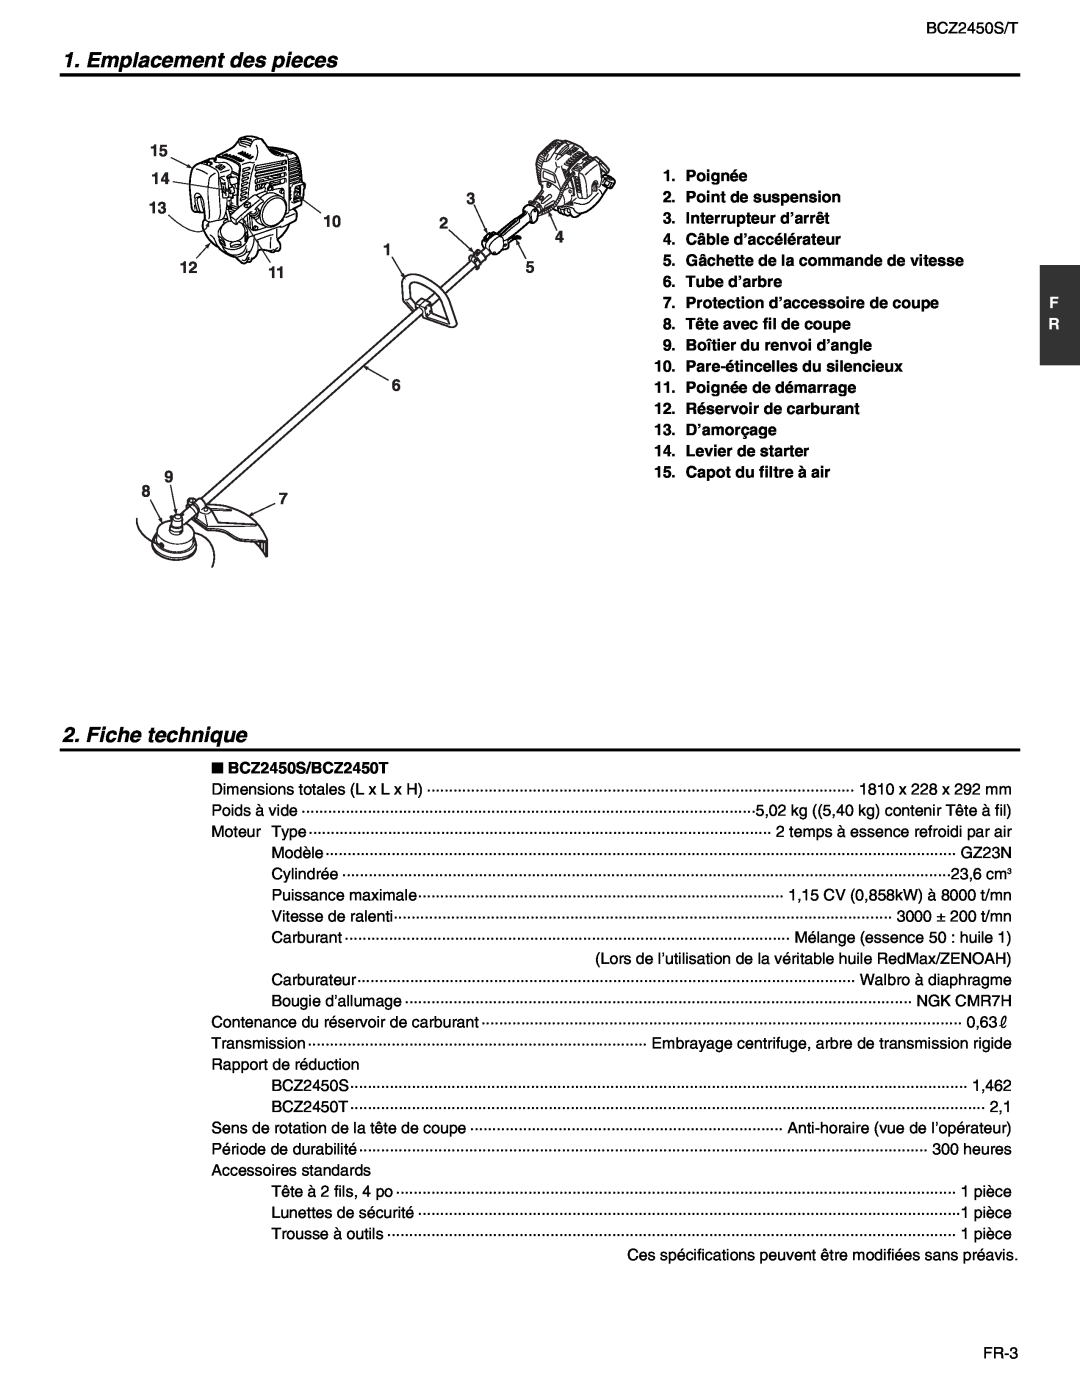 RedMax BCZ2450S, BCZ2450T manual Emplacement des pieces, Fiche technique 